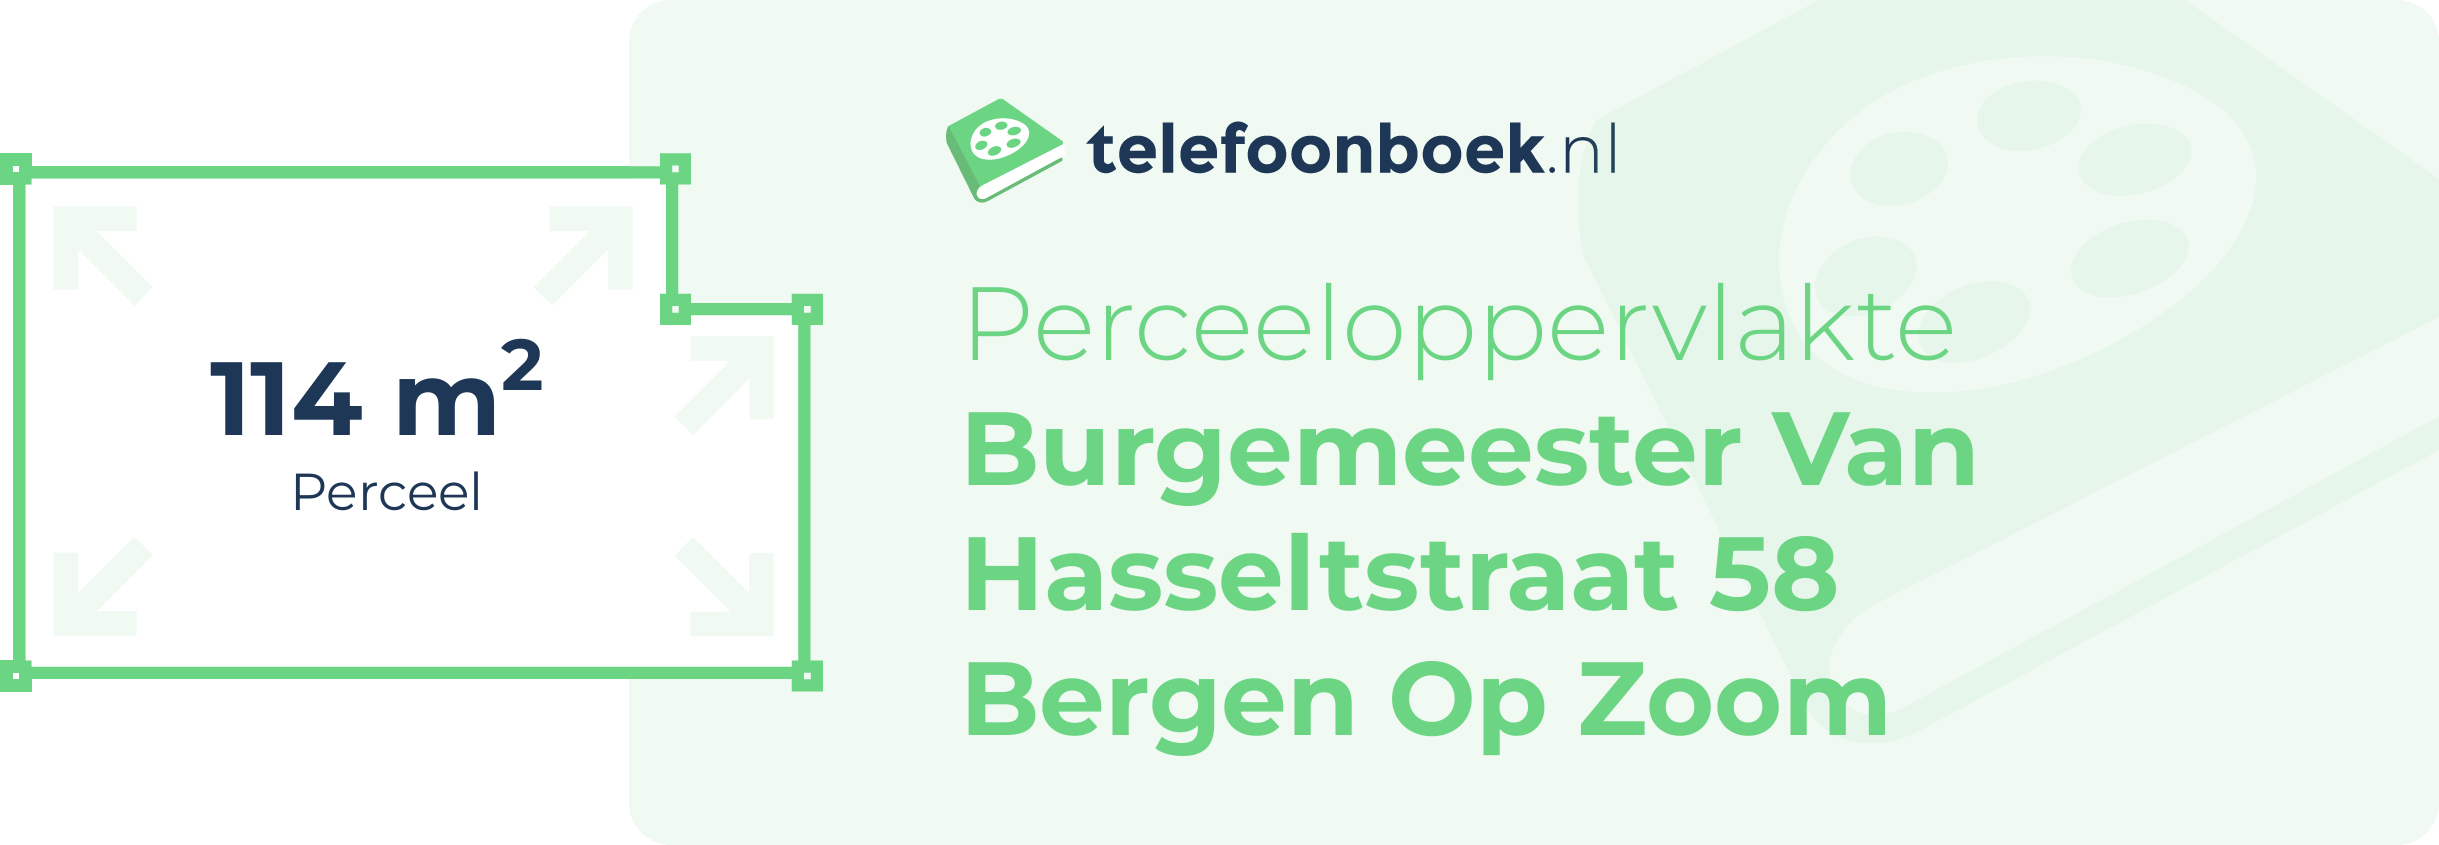 Perceeloppervlakte Burgemeester Van Hasseltstraat 58 Bergen Op Zoom